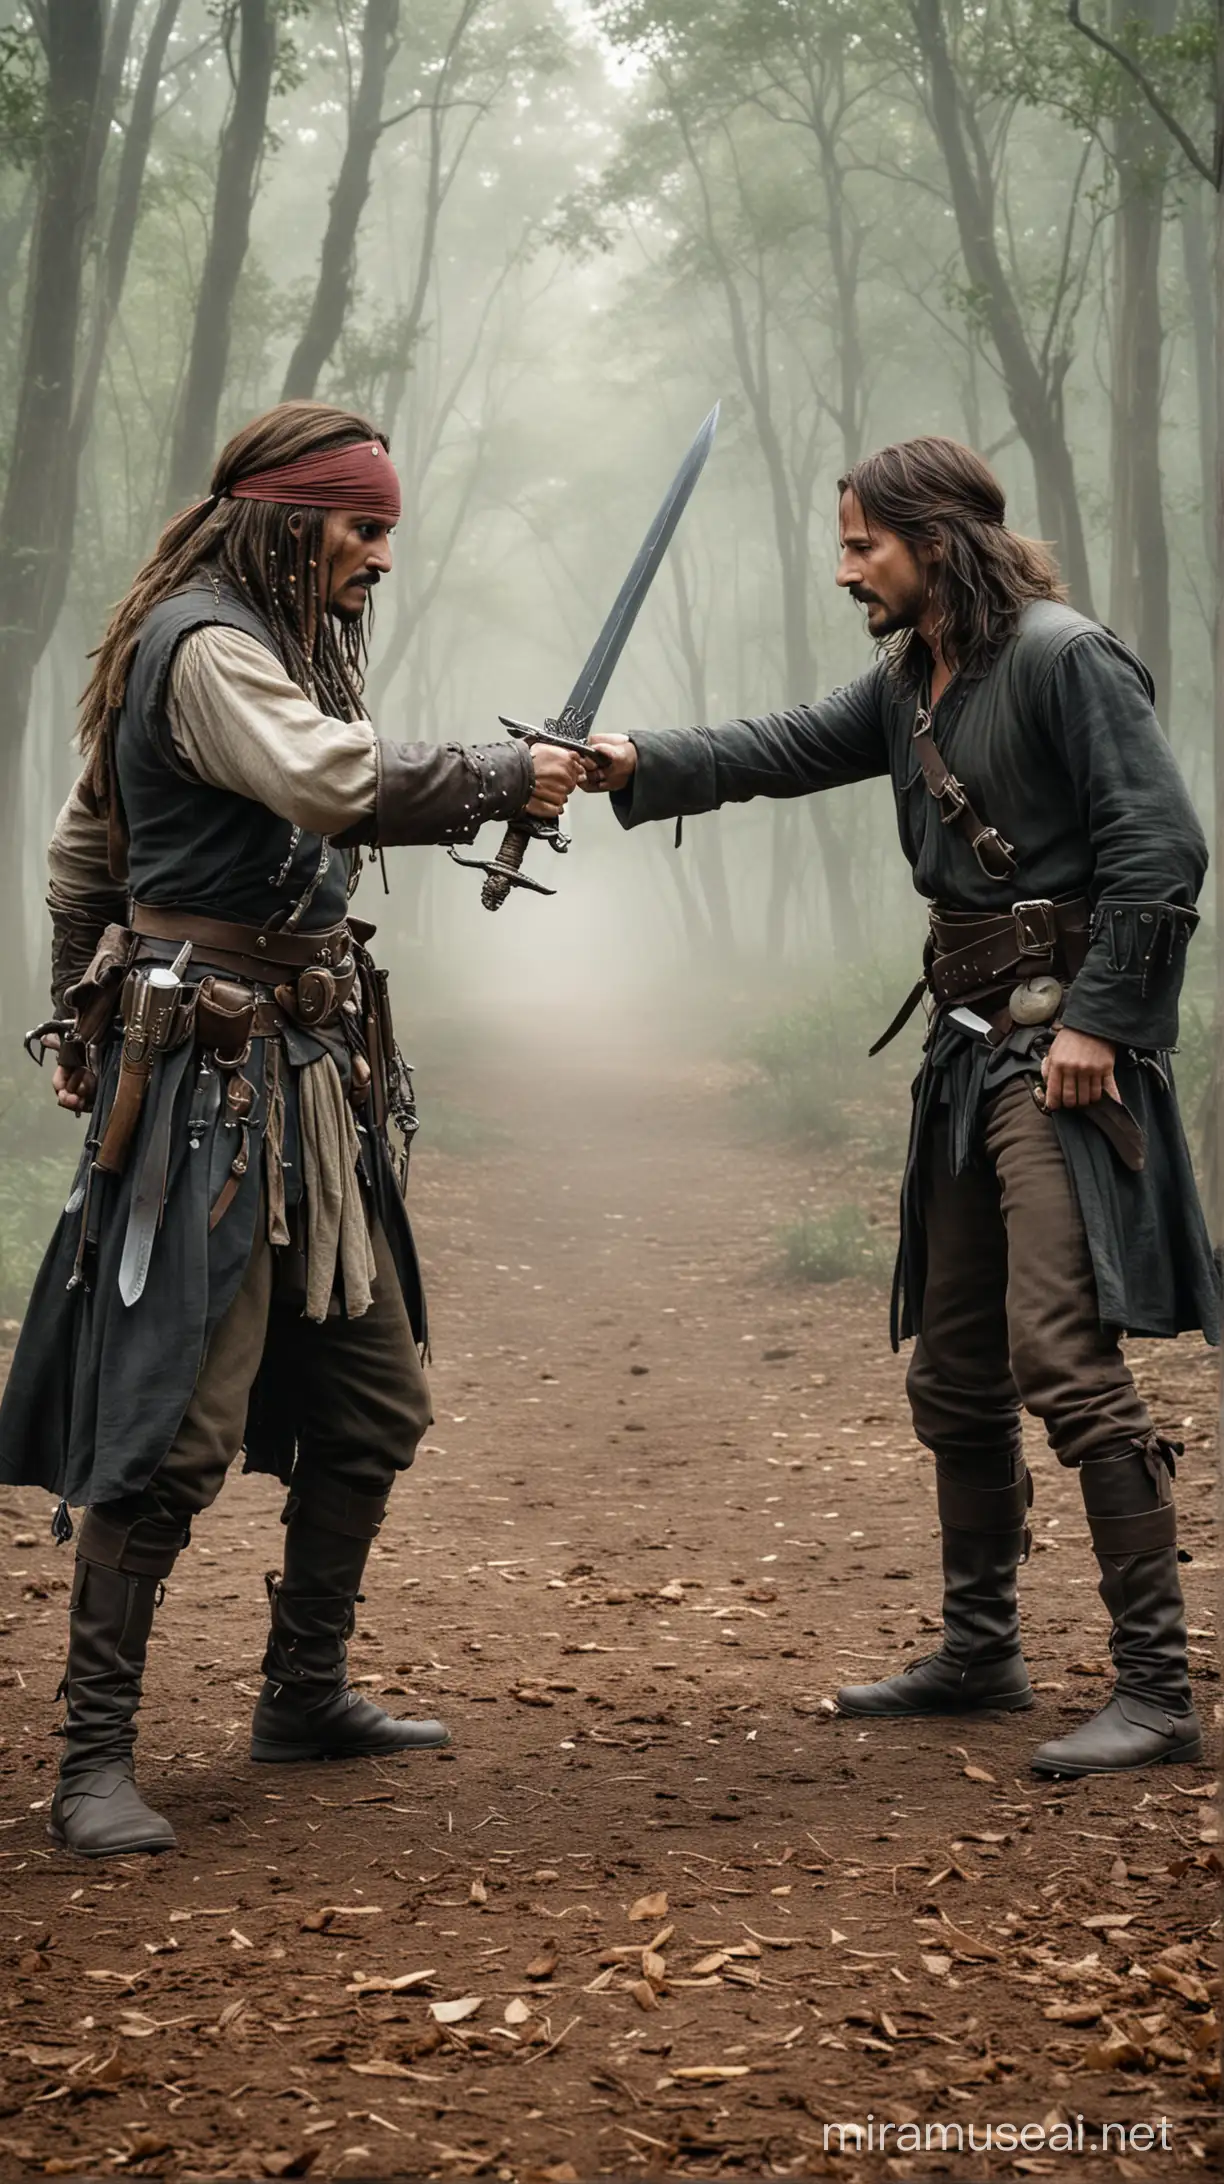 Epic Sword Duel Between Jack Sparrow and Aragorn